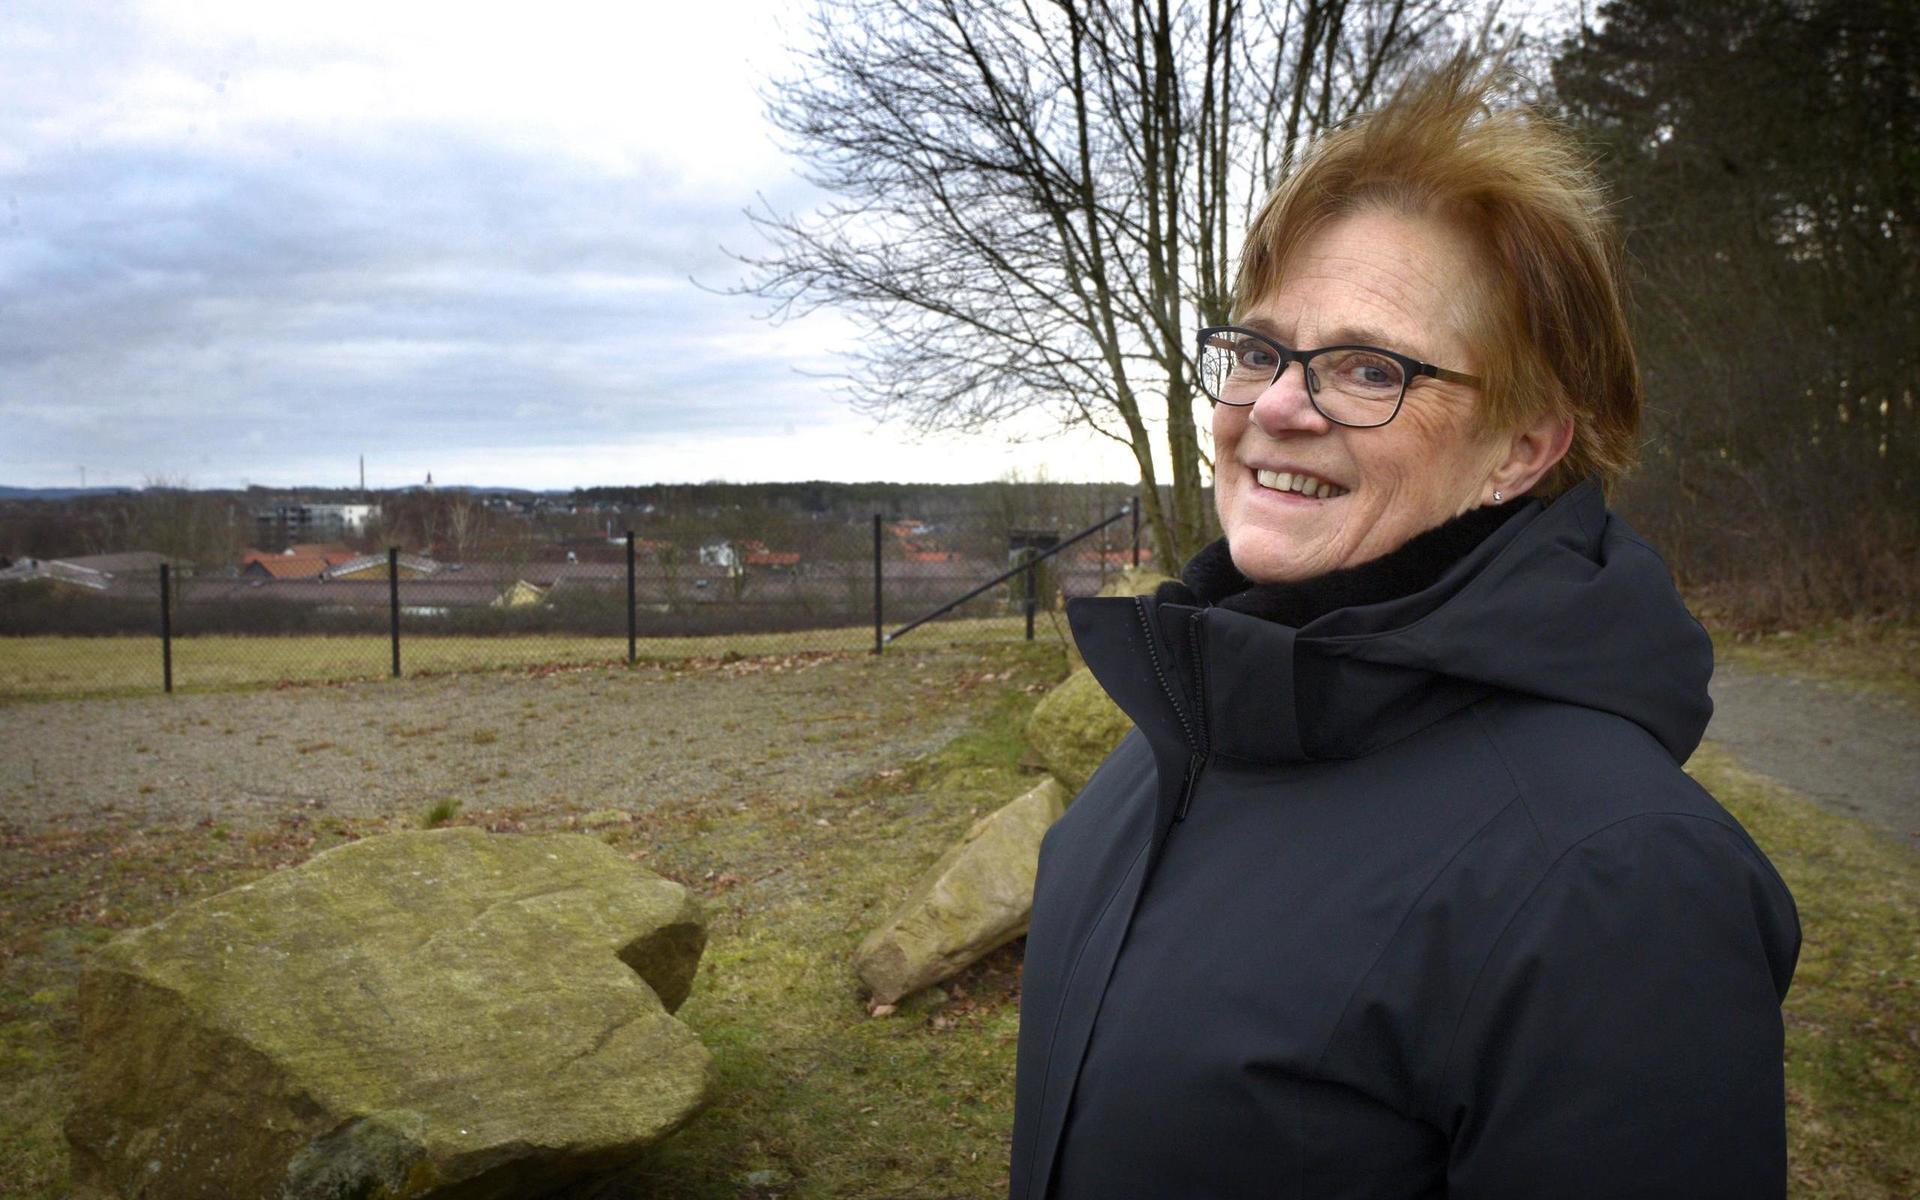 Varbergs församling har uppvaktat kommunen om att få köpa mark i området för att utöka kyrkogården – men Stenkil säger att kommunen ogärna släpper ifrån sig friluftsområdena.